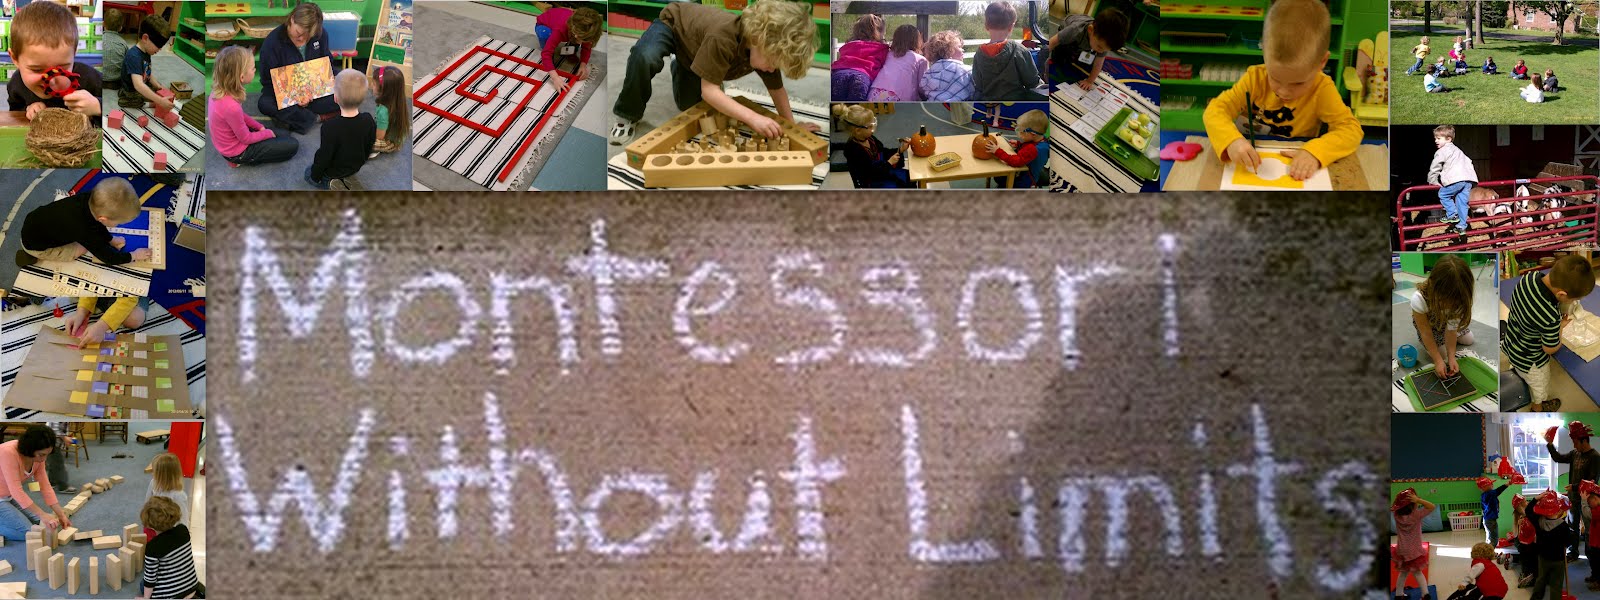 Montessori Without Limits